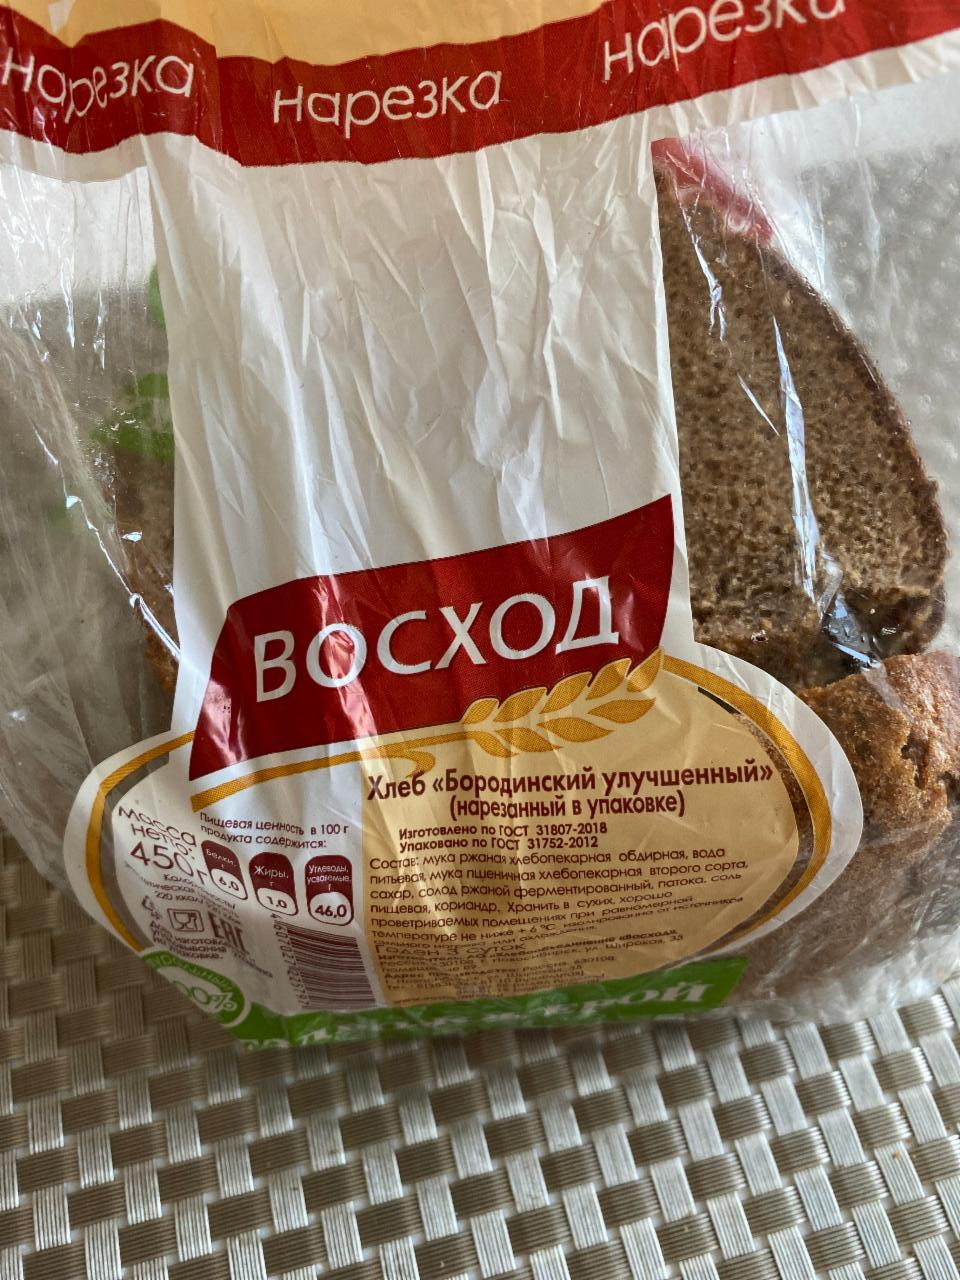 Фото - хлеб Бородинский Бездрожжевой улучшенный Восход